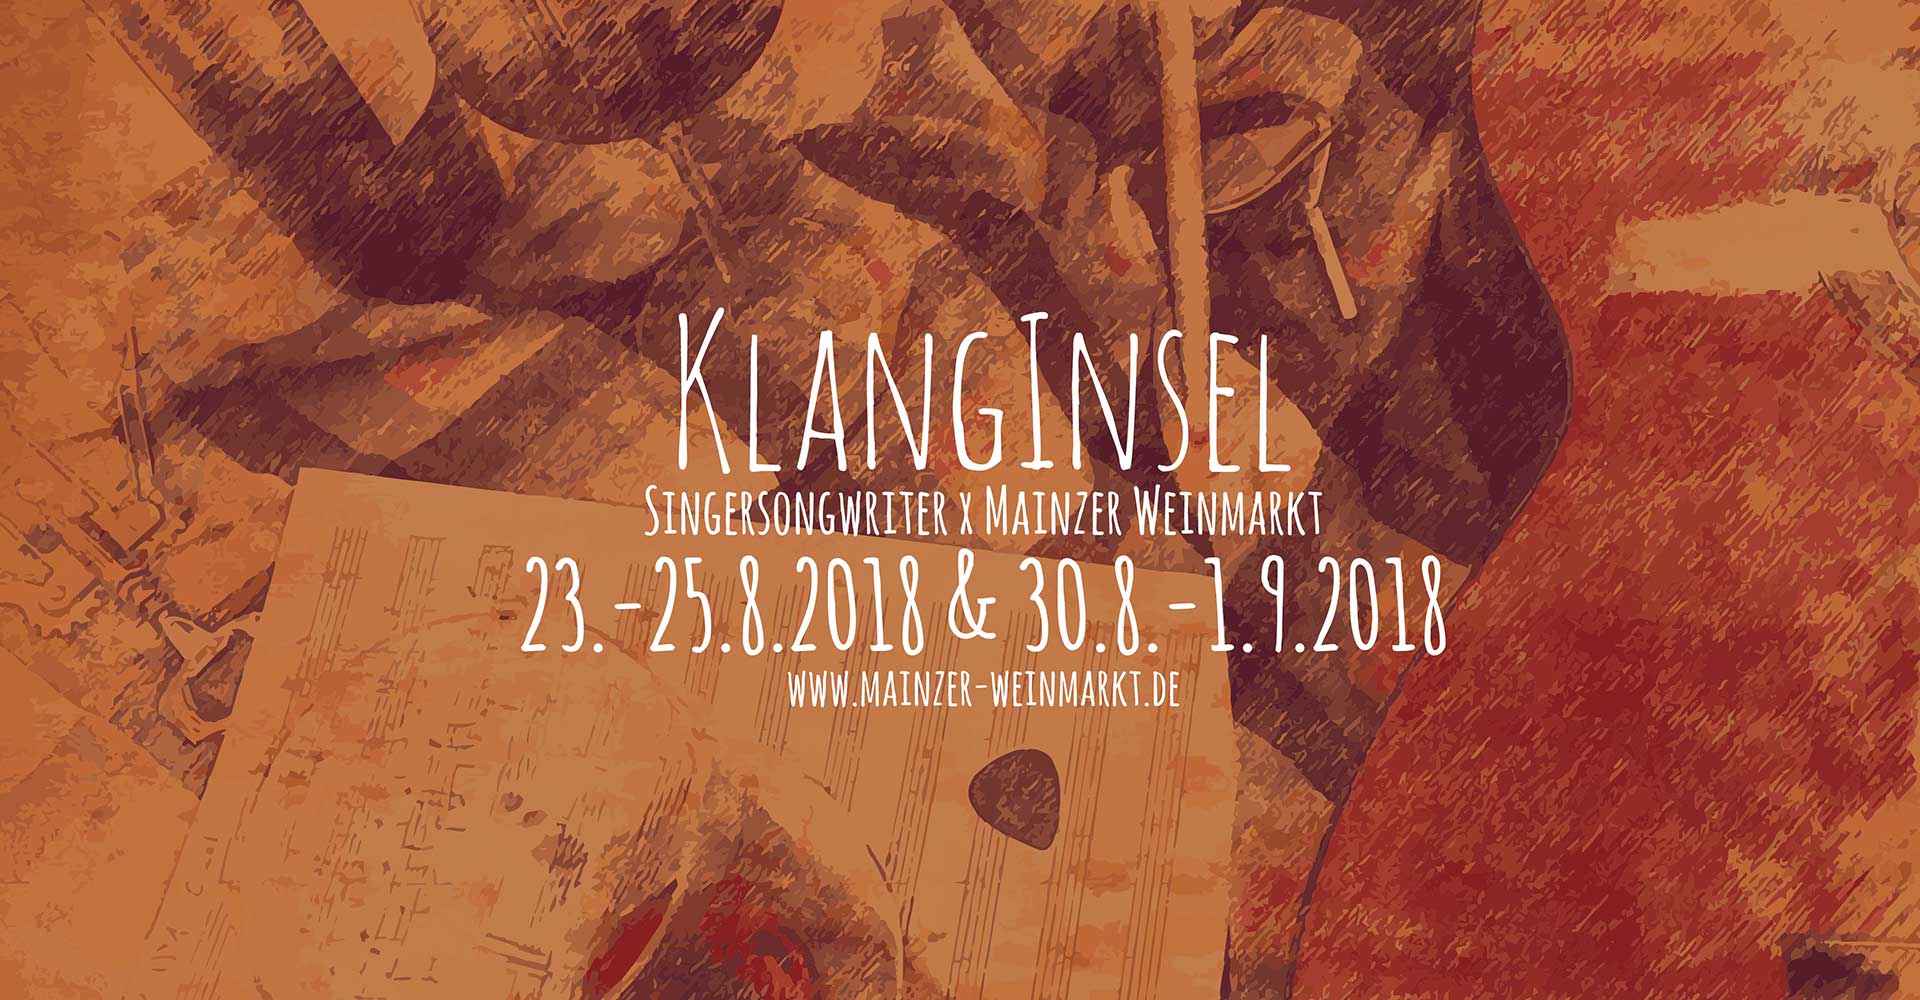 Musikmaschine-Mainz-Wiesbaden-Frankfurt-konzerte-events-markt-veranstaltungen-musik-live-booking-promo-promotion-klanginsel